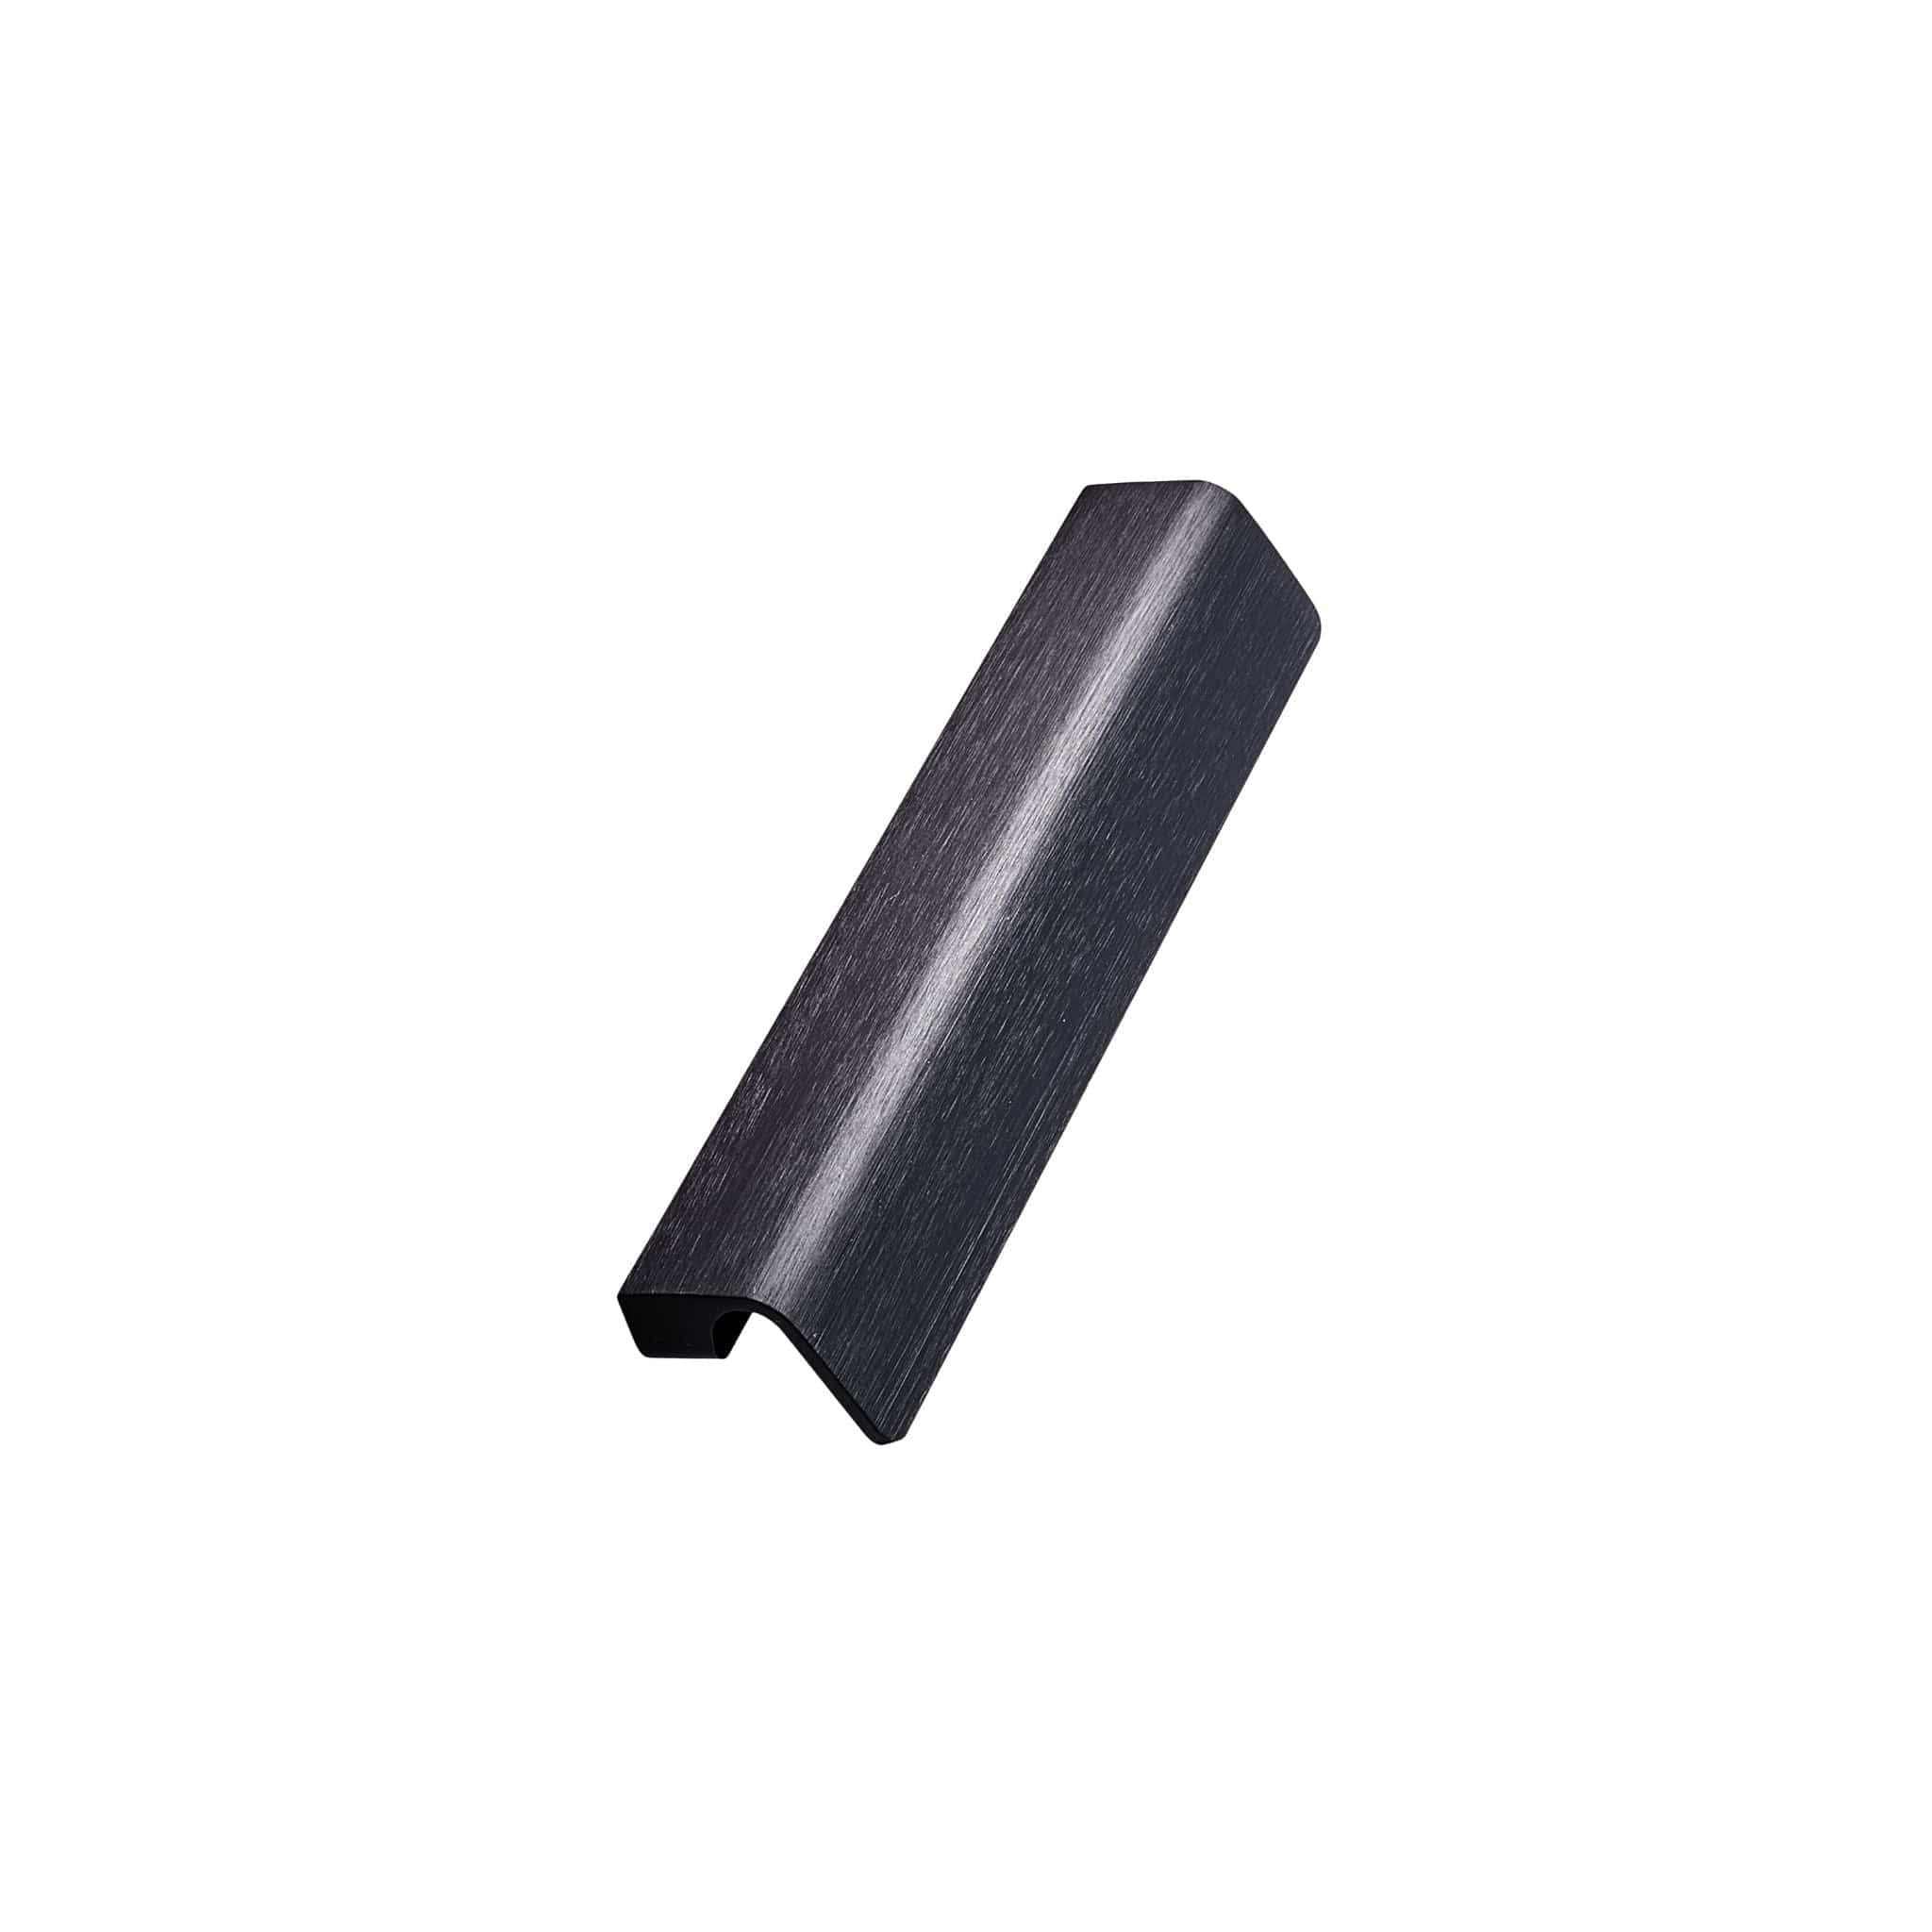 Fringe | Greb i Børstet Mat Sort L 170 mm (C/C: 160 mm) Furnipart FP-442220160-76 FINICC